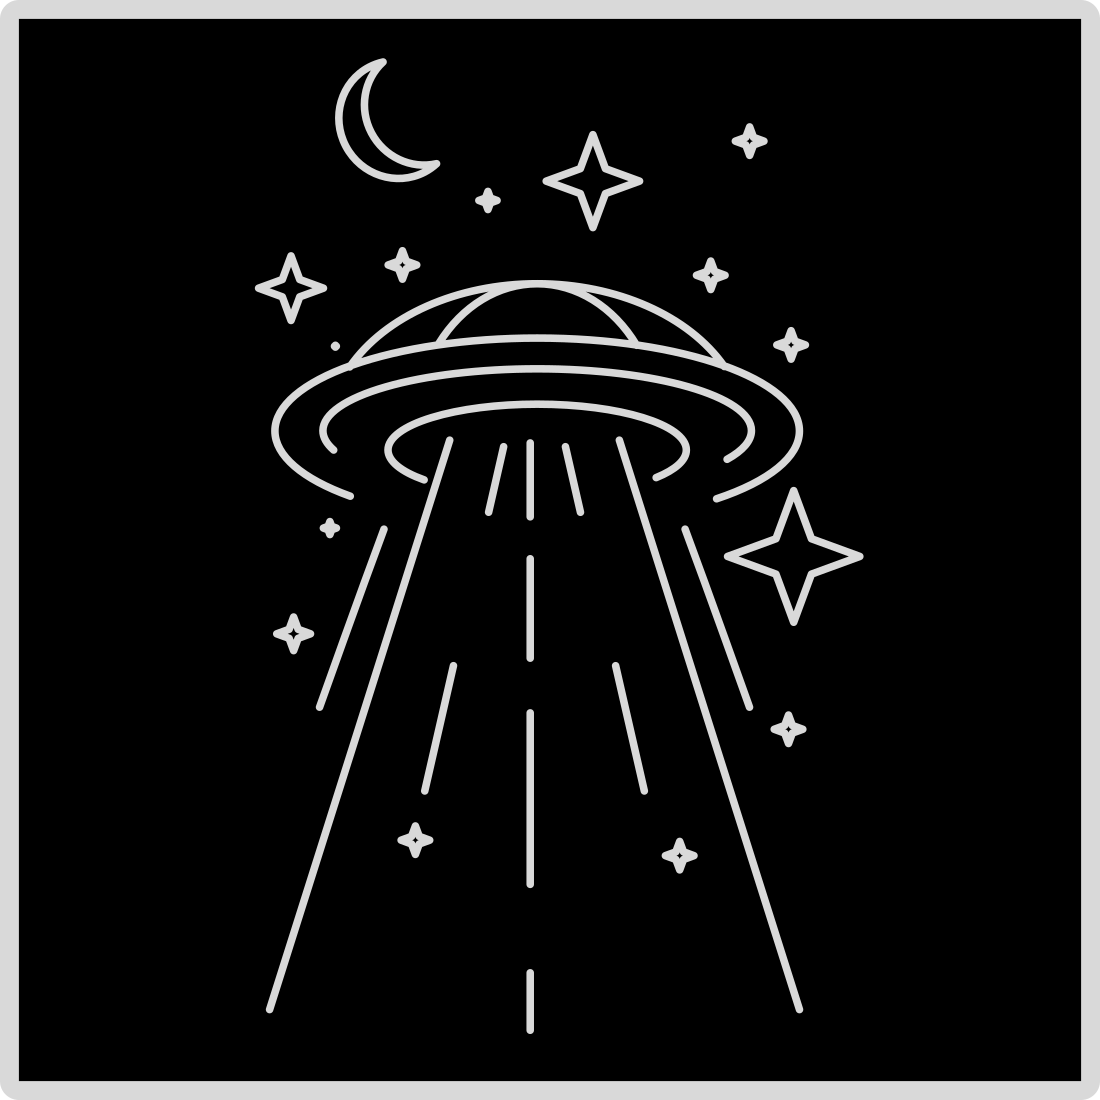 Alien - Simple Line Art T-shirt Design cover image.